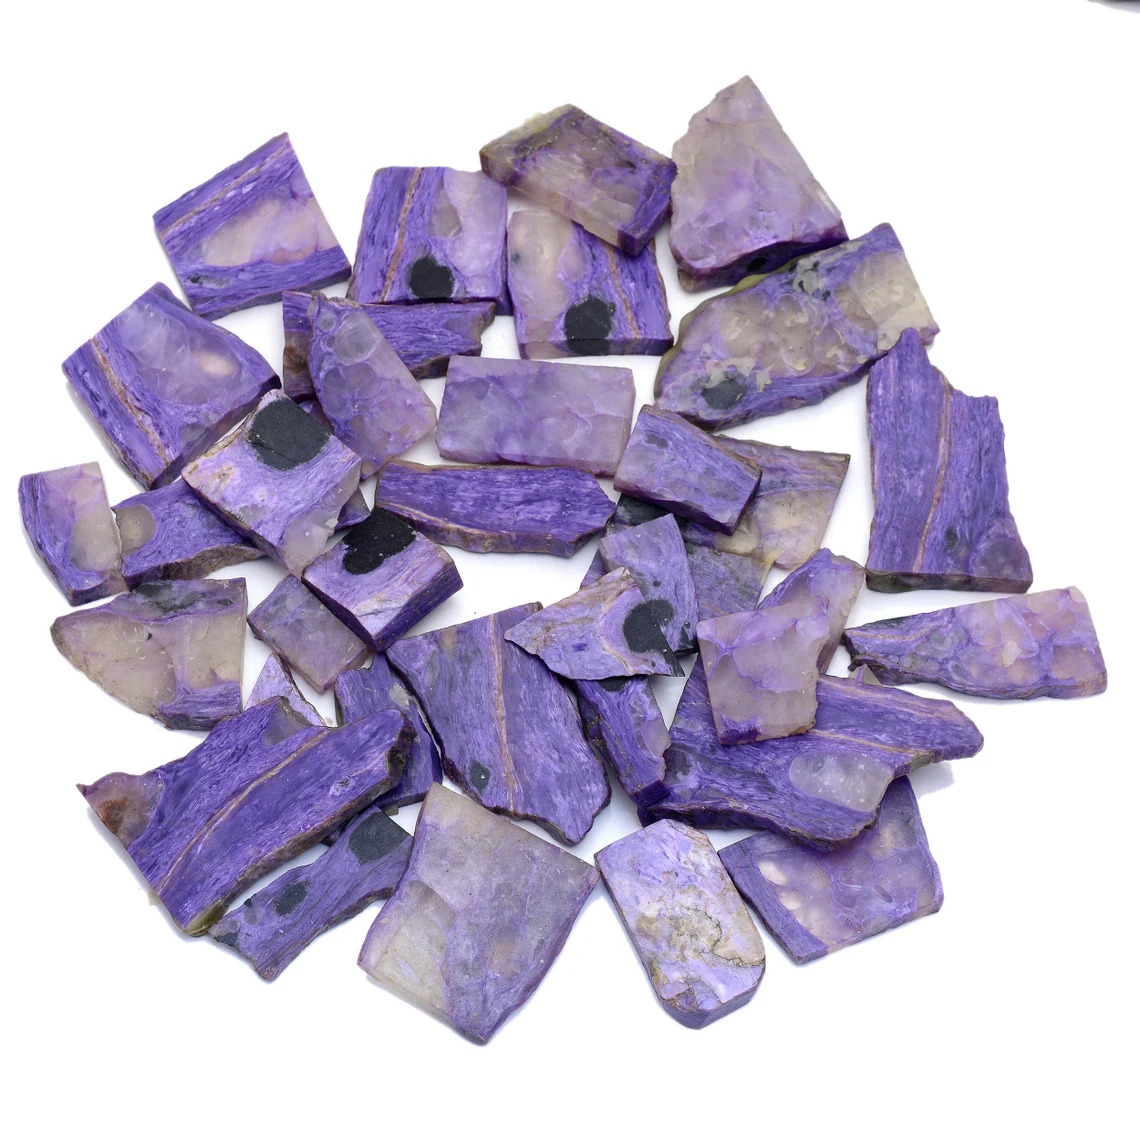 Natural Purple Charoite Rough Slices Specimen Minerals 30-50 MM-RAW GEMSTONE.